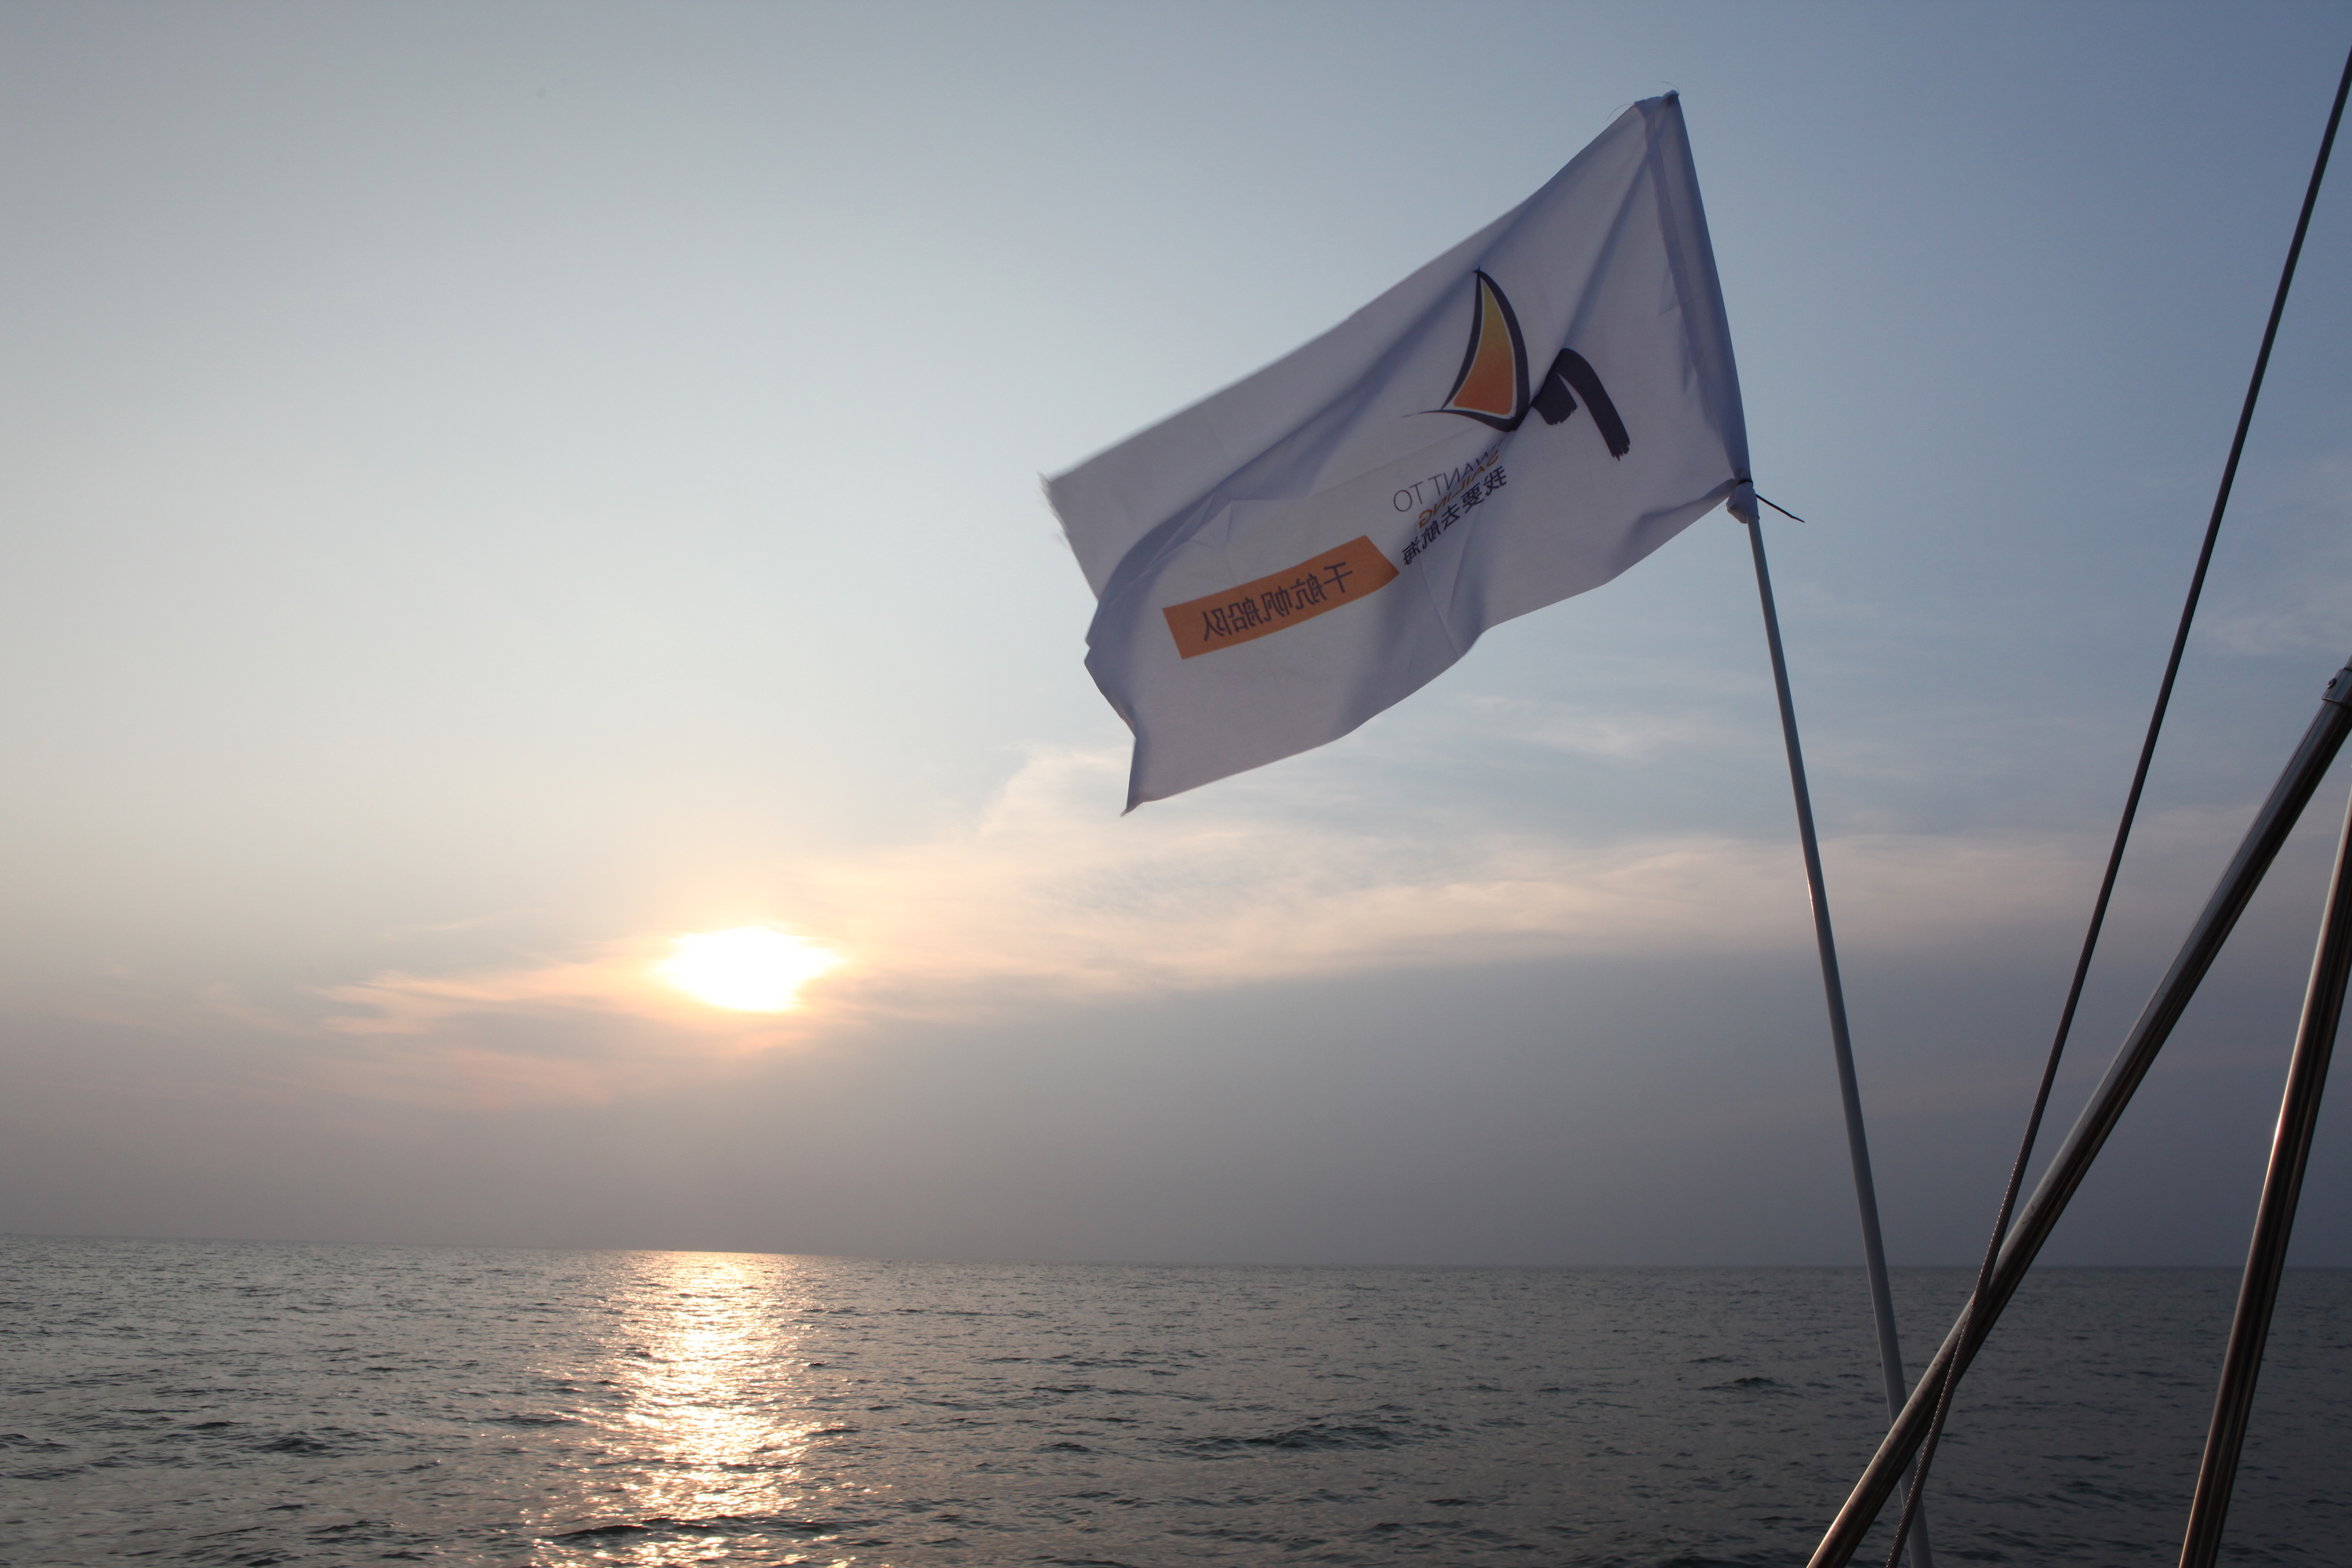 我要航海网千航帆船队2016环渤海杯帆船拉力赛IMG_6621.JPG